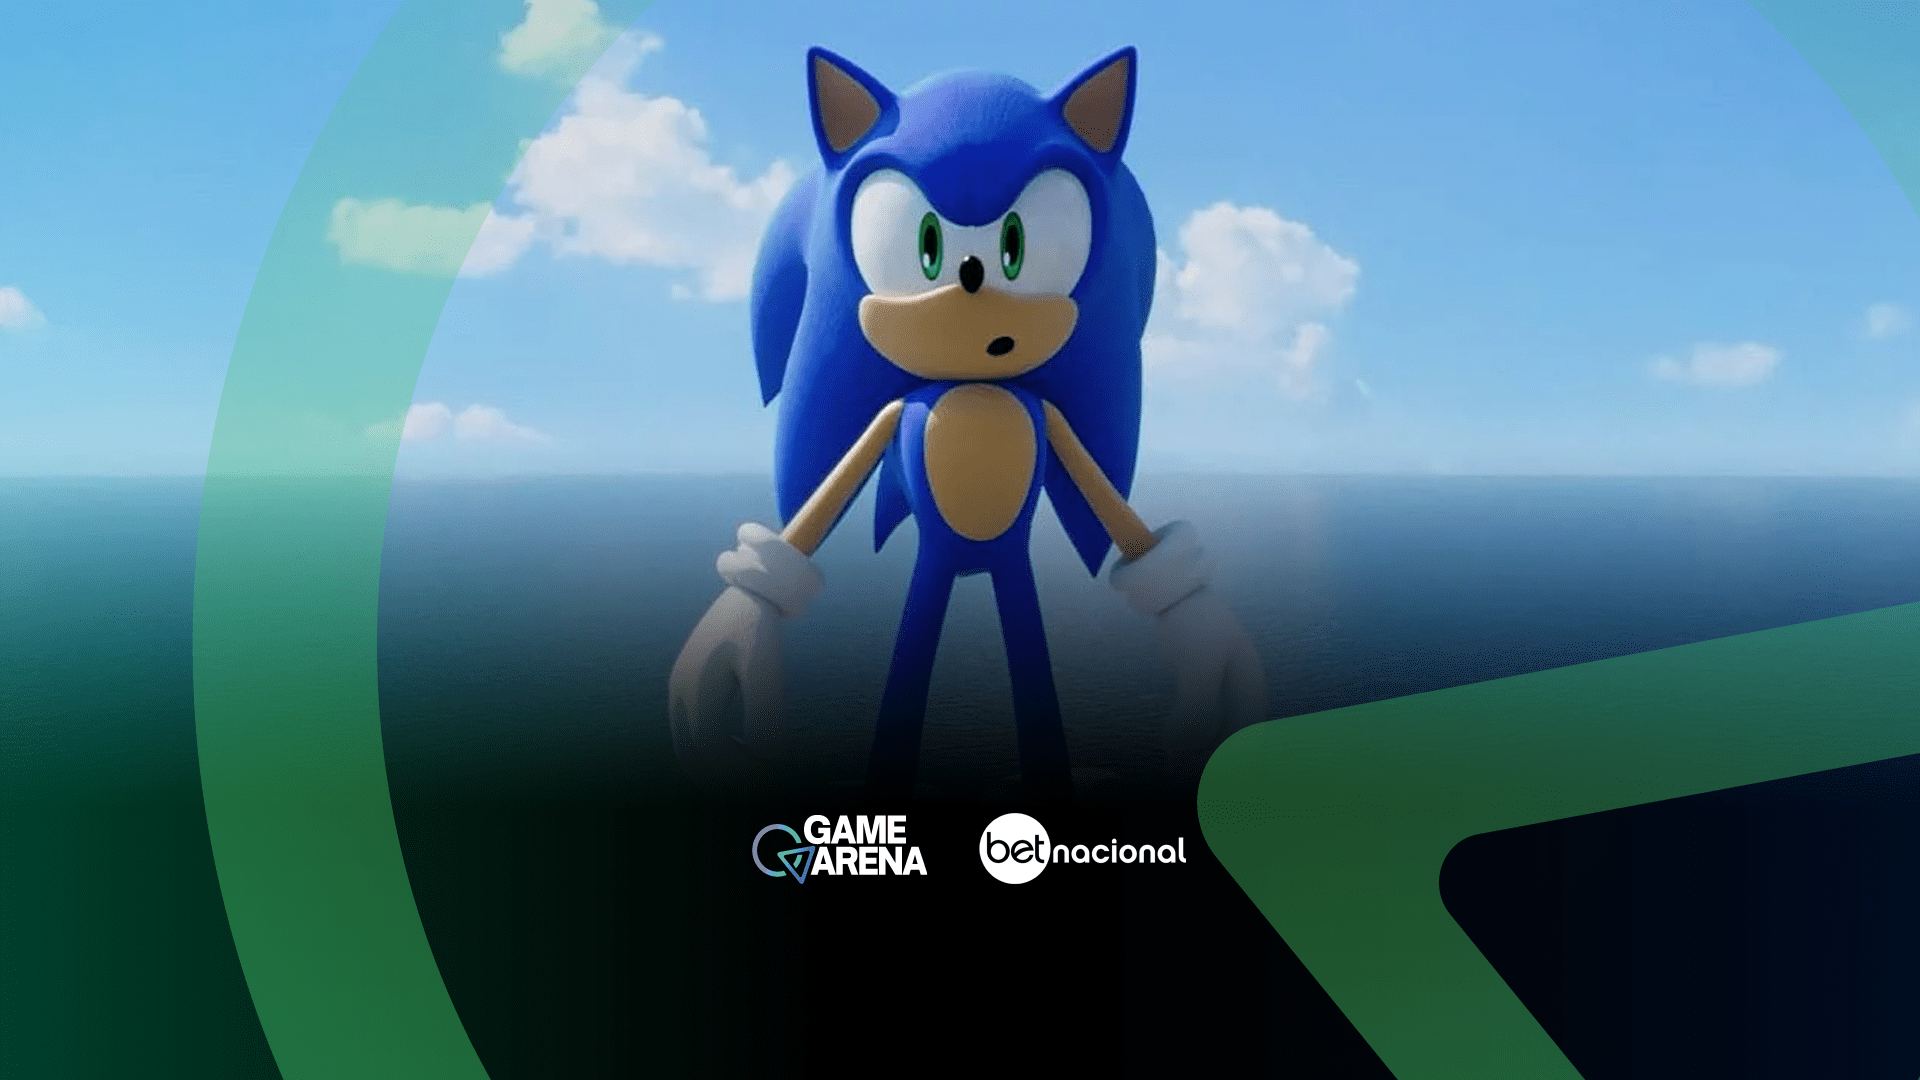 Sonic 2: O Filme: Saiba tudo sobre a adaptação do game para o cinema